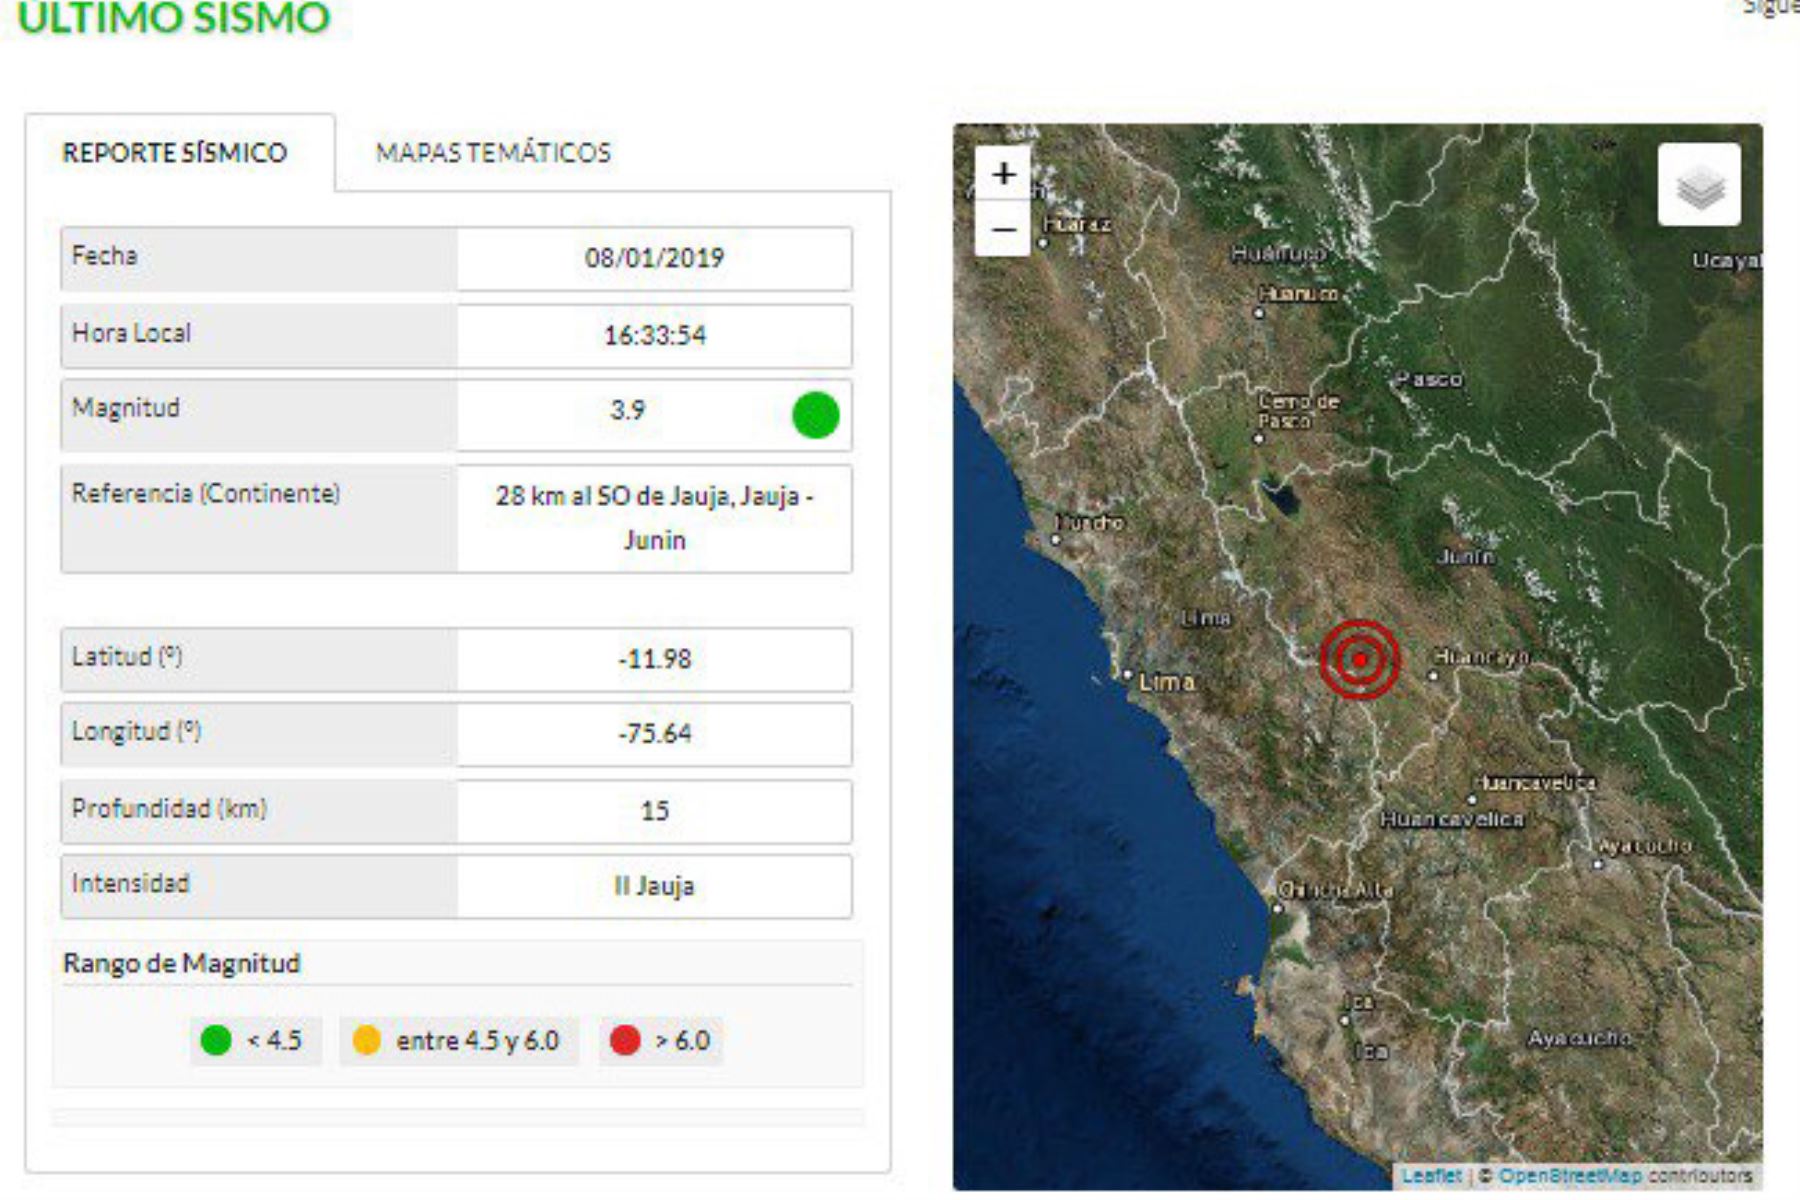 El Instituto Geofísico del Perú reportó un sismo de magnitud 3.9 en la provincia de Jauja, región Junín.